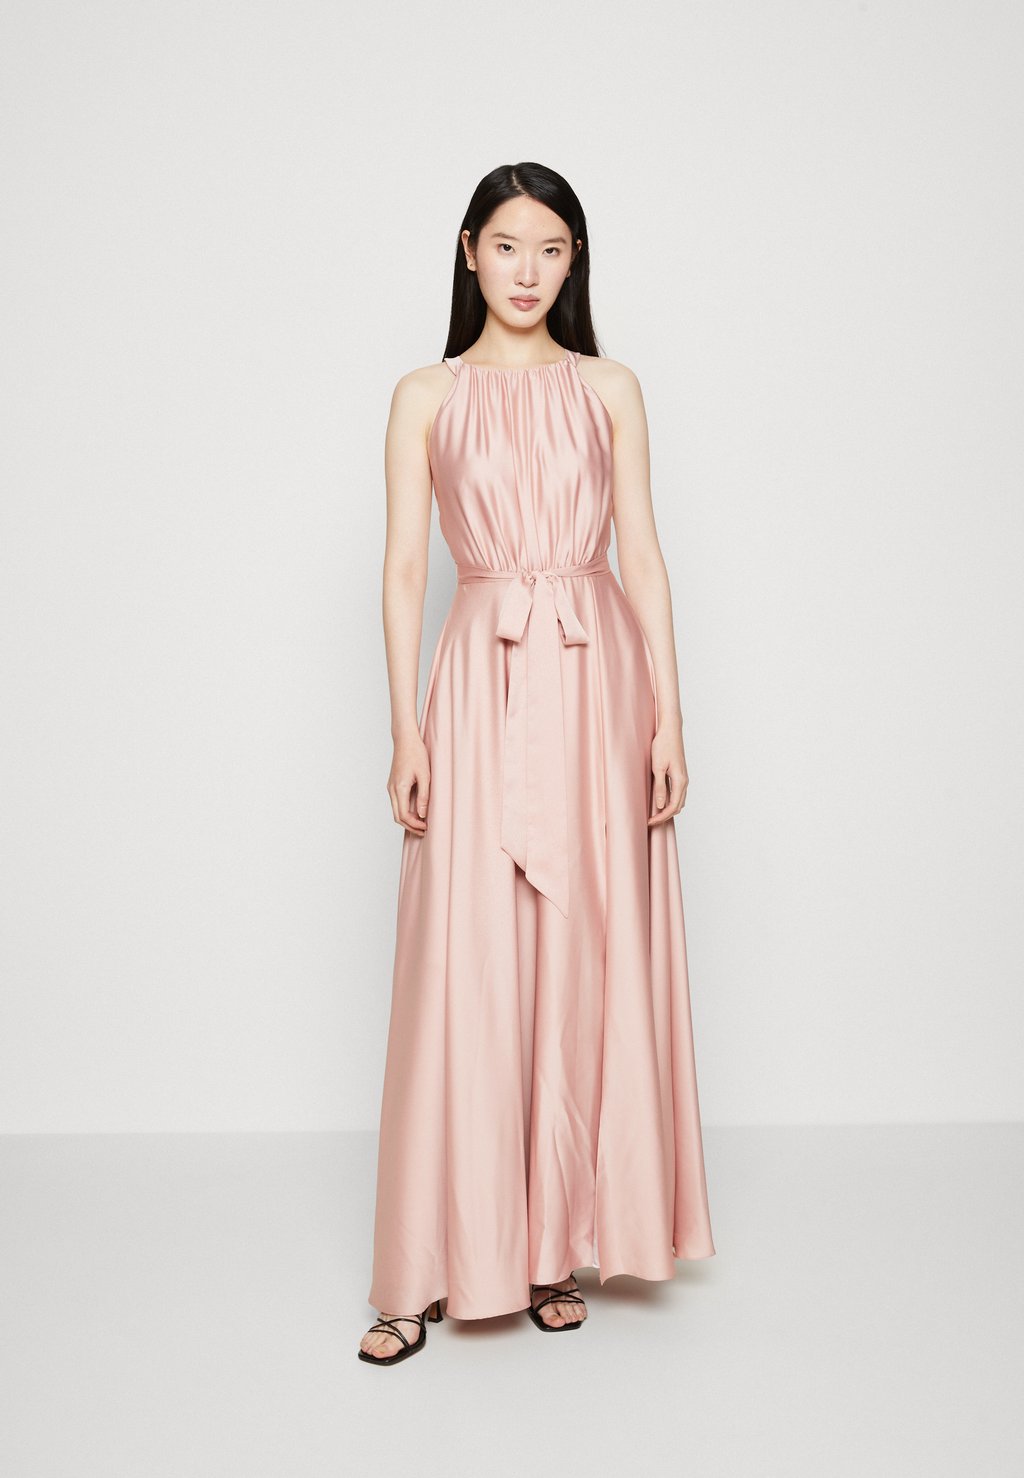 одеколон rose blush 50ml лимитированный дизайн Вечернее платье Swing